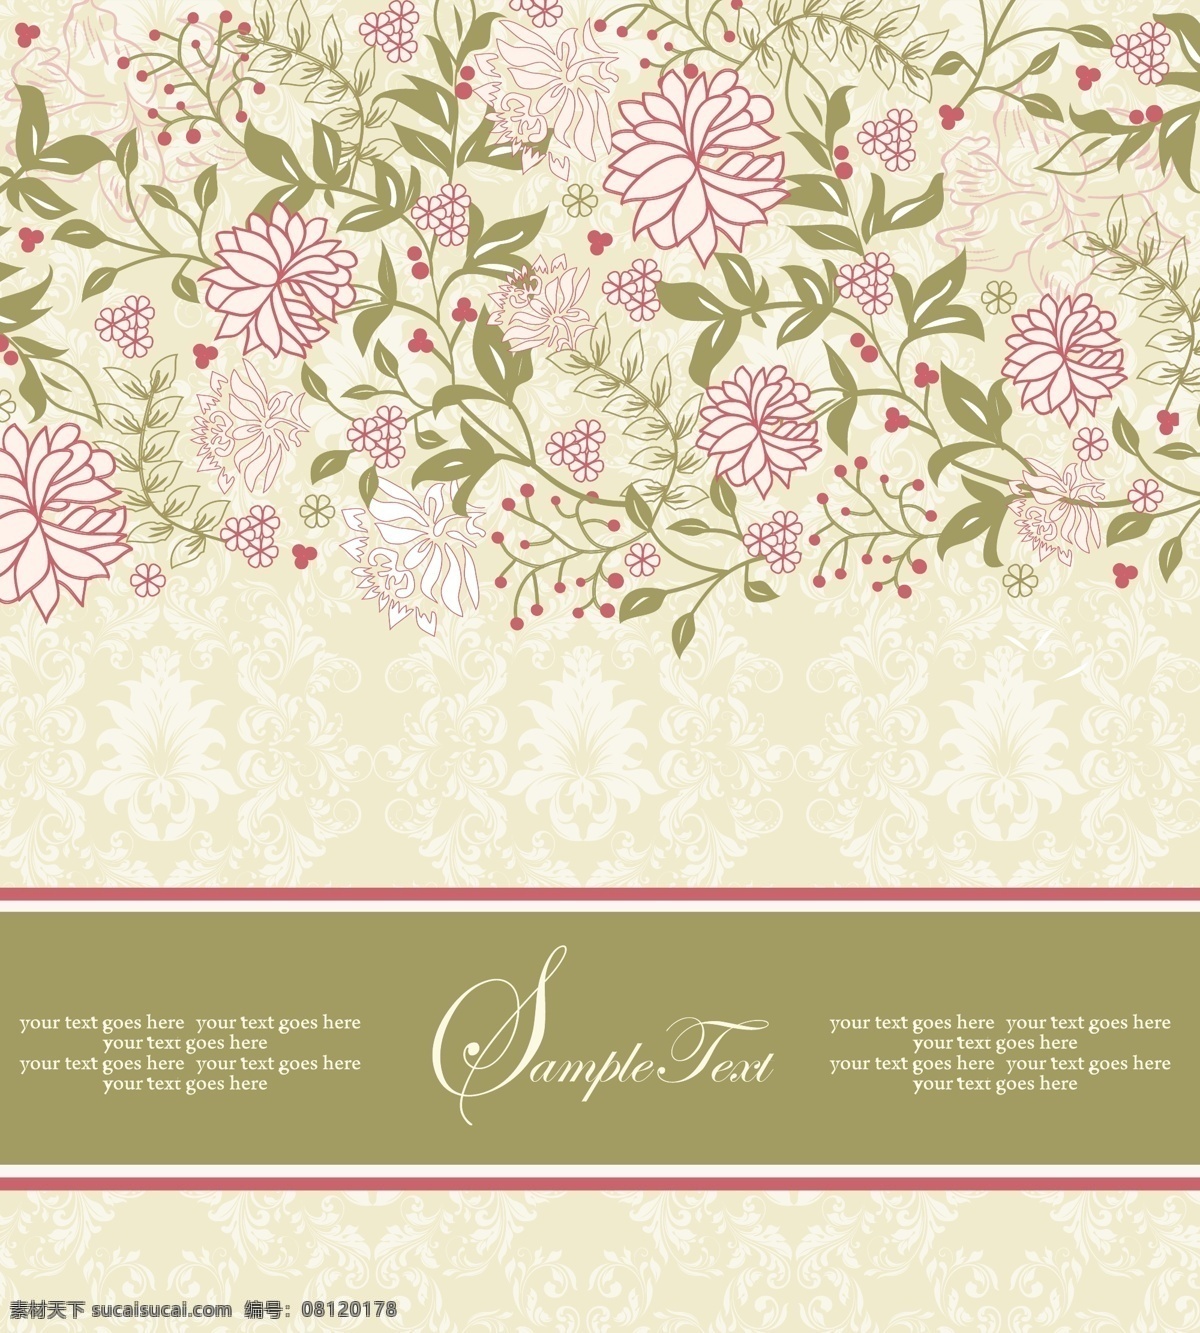 粉色花枝背景 粉色 花枝 花朵 花纹 背景图案 背景模板 植物背景 底纹背景 底纹边框 矢量素材 白色